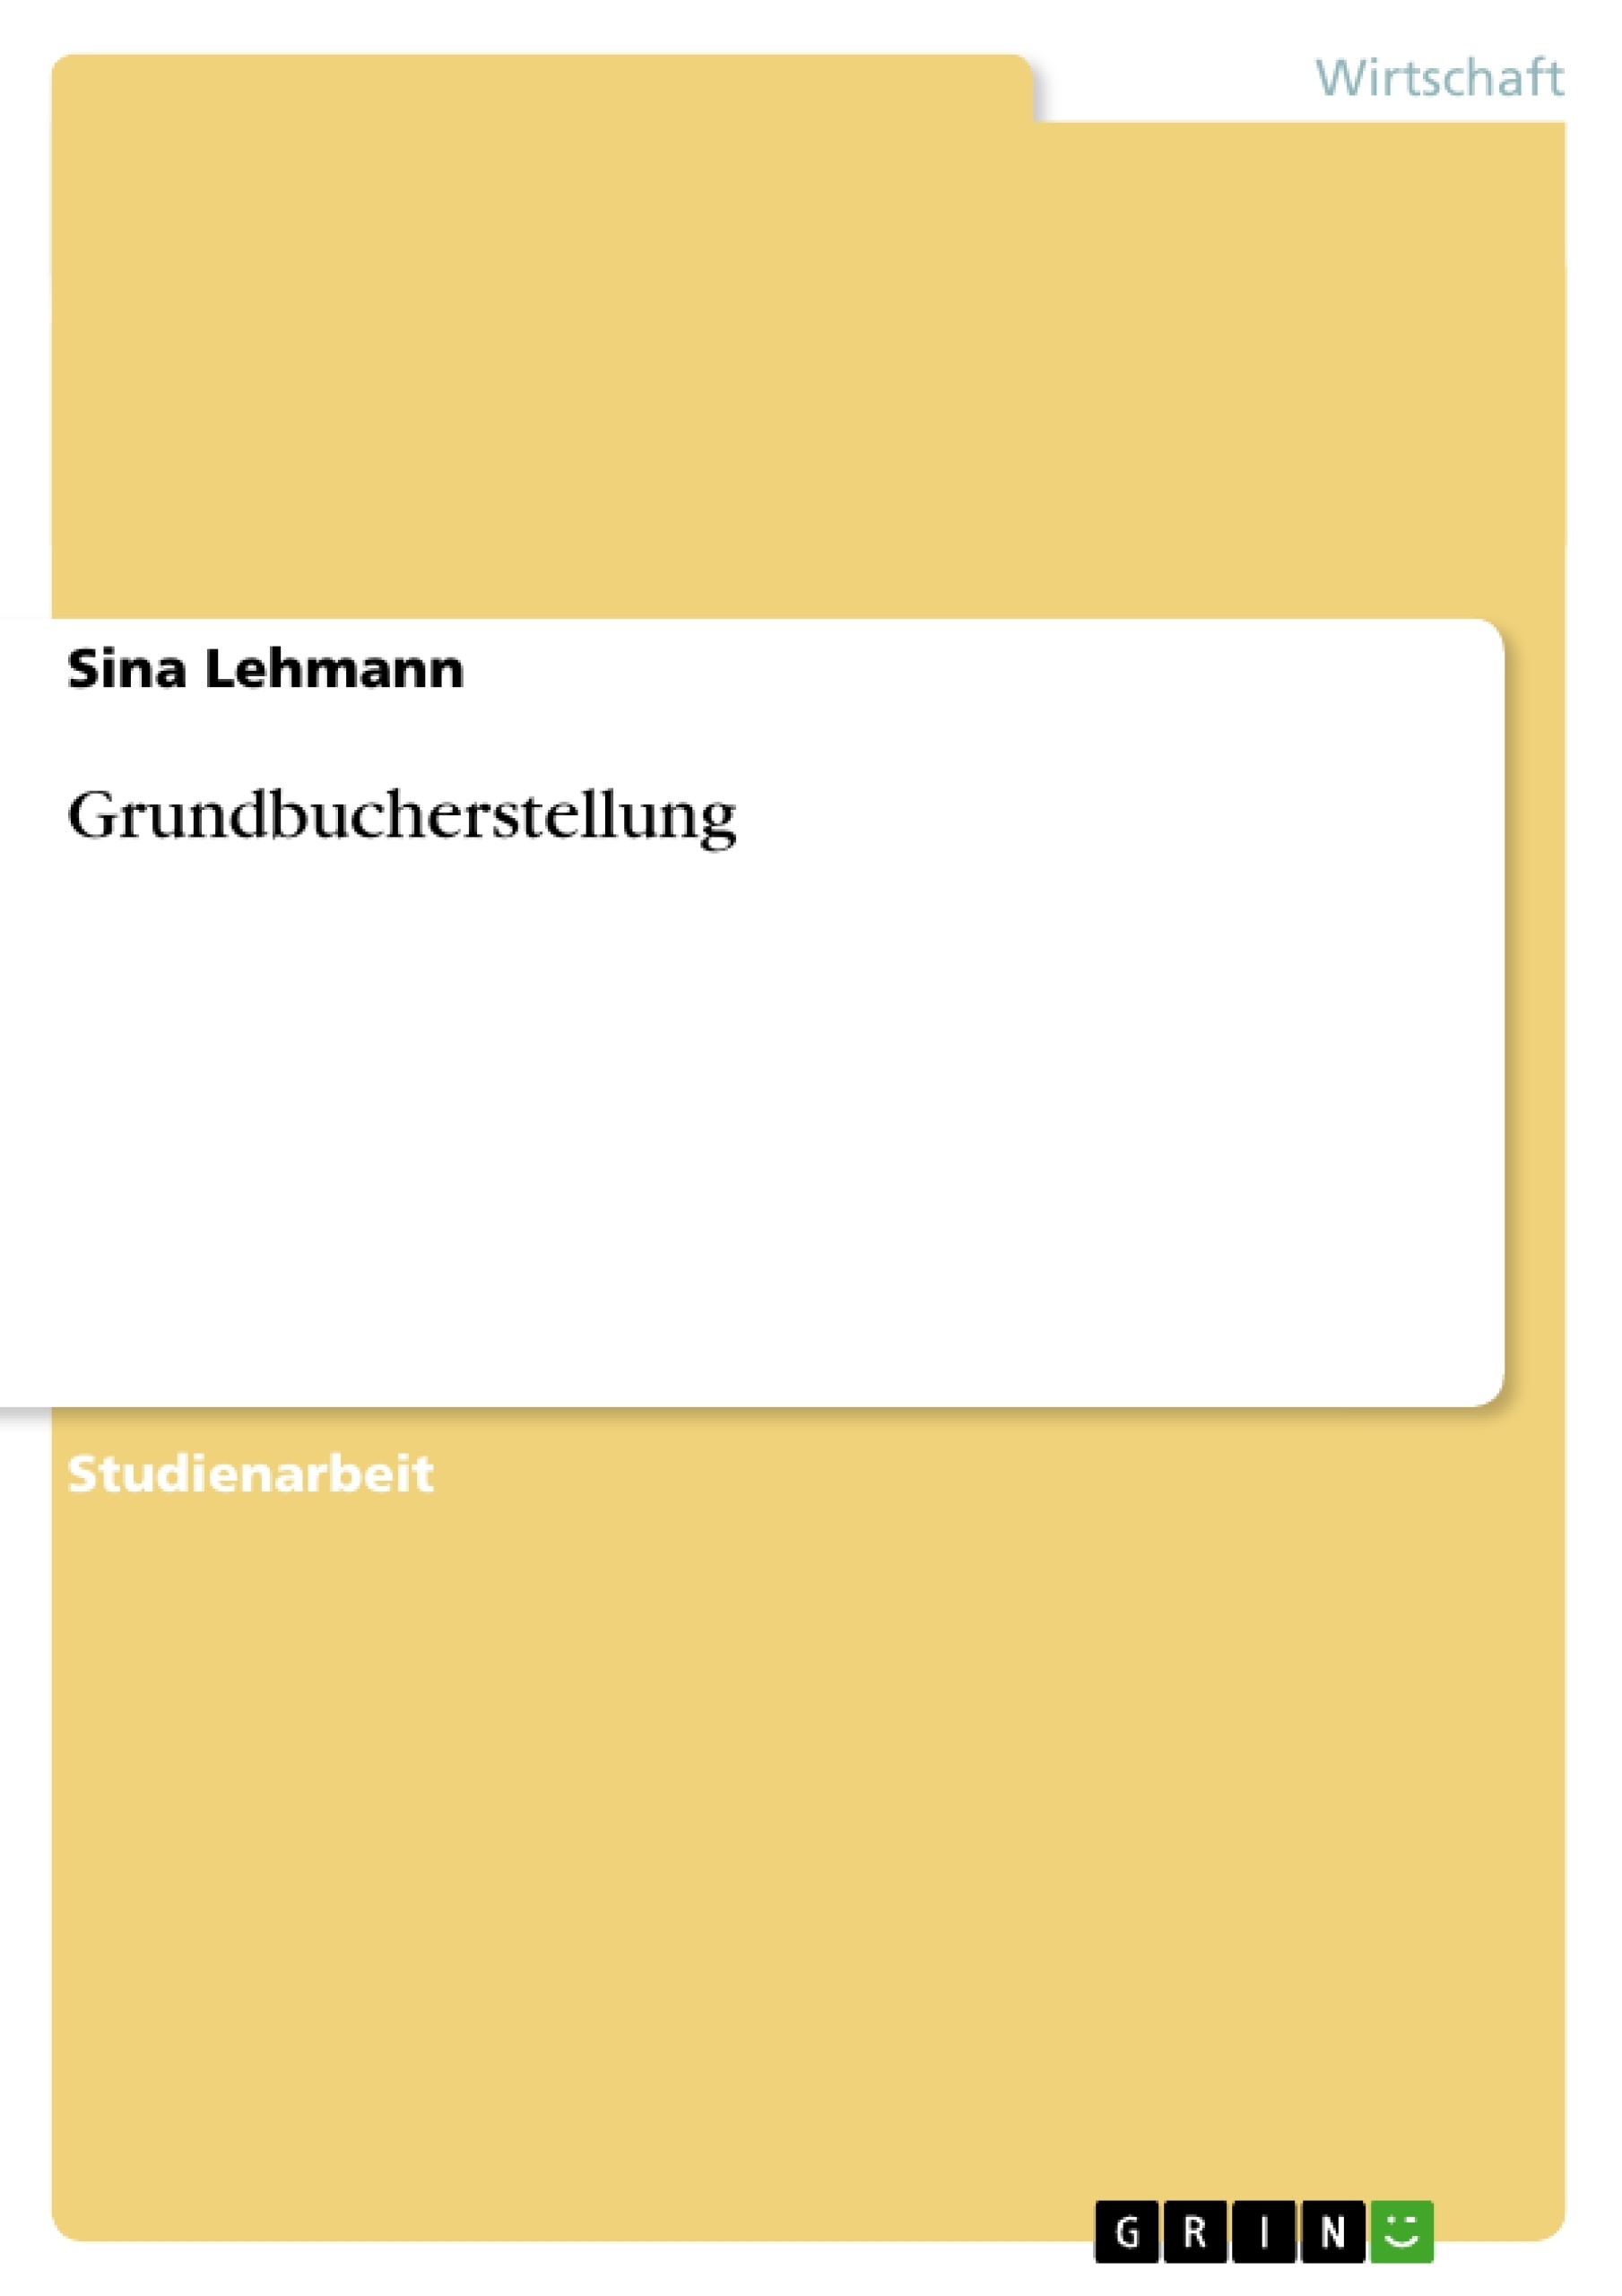 Título: Grundbucherstellung